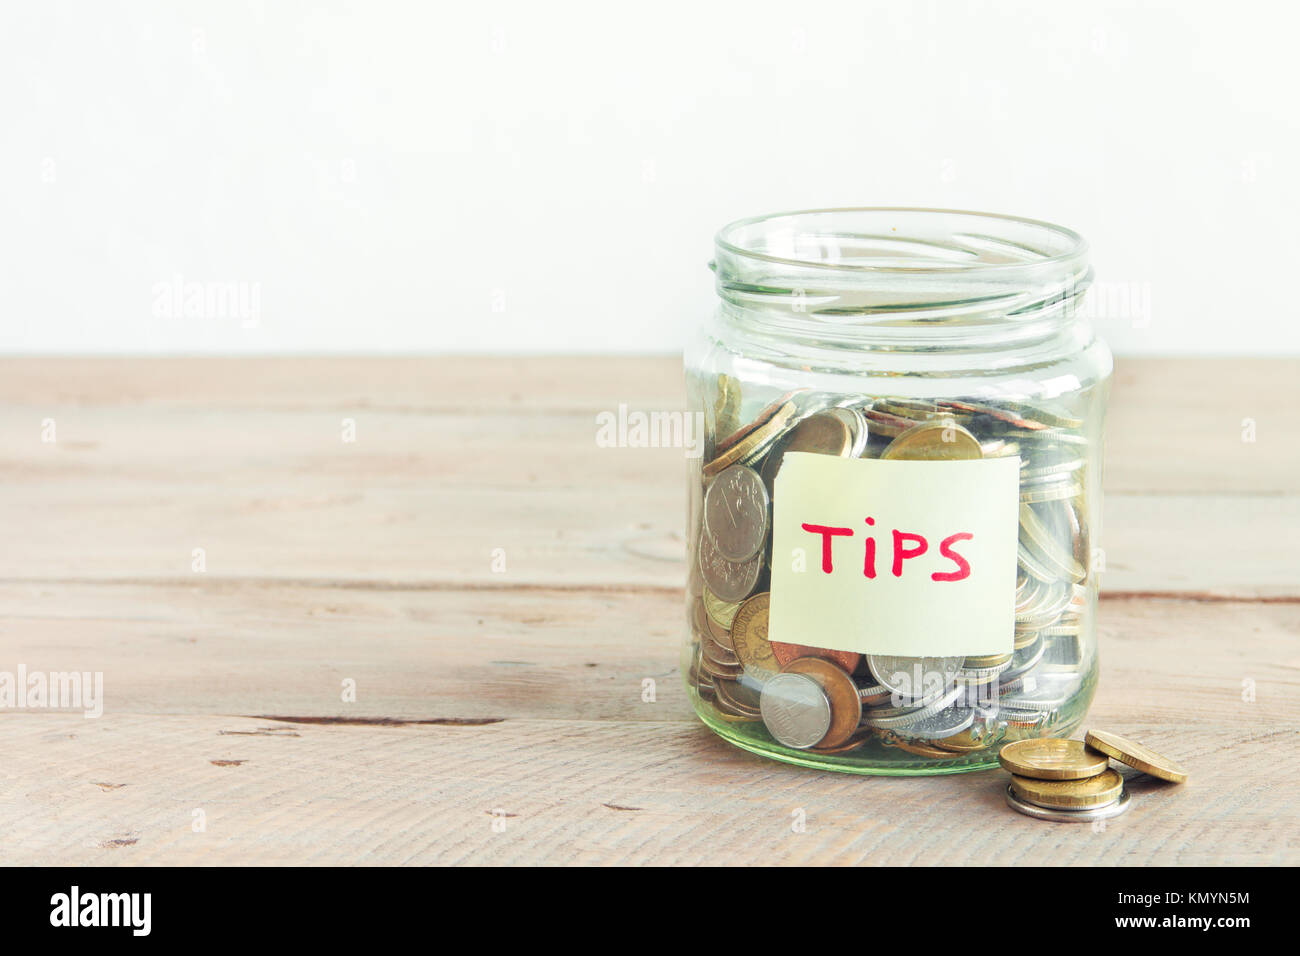 Münzen in Glas Glas mit Tipps label. Geld sparen, Tipps und Spendenkonzept, kopieren. Stockfoto